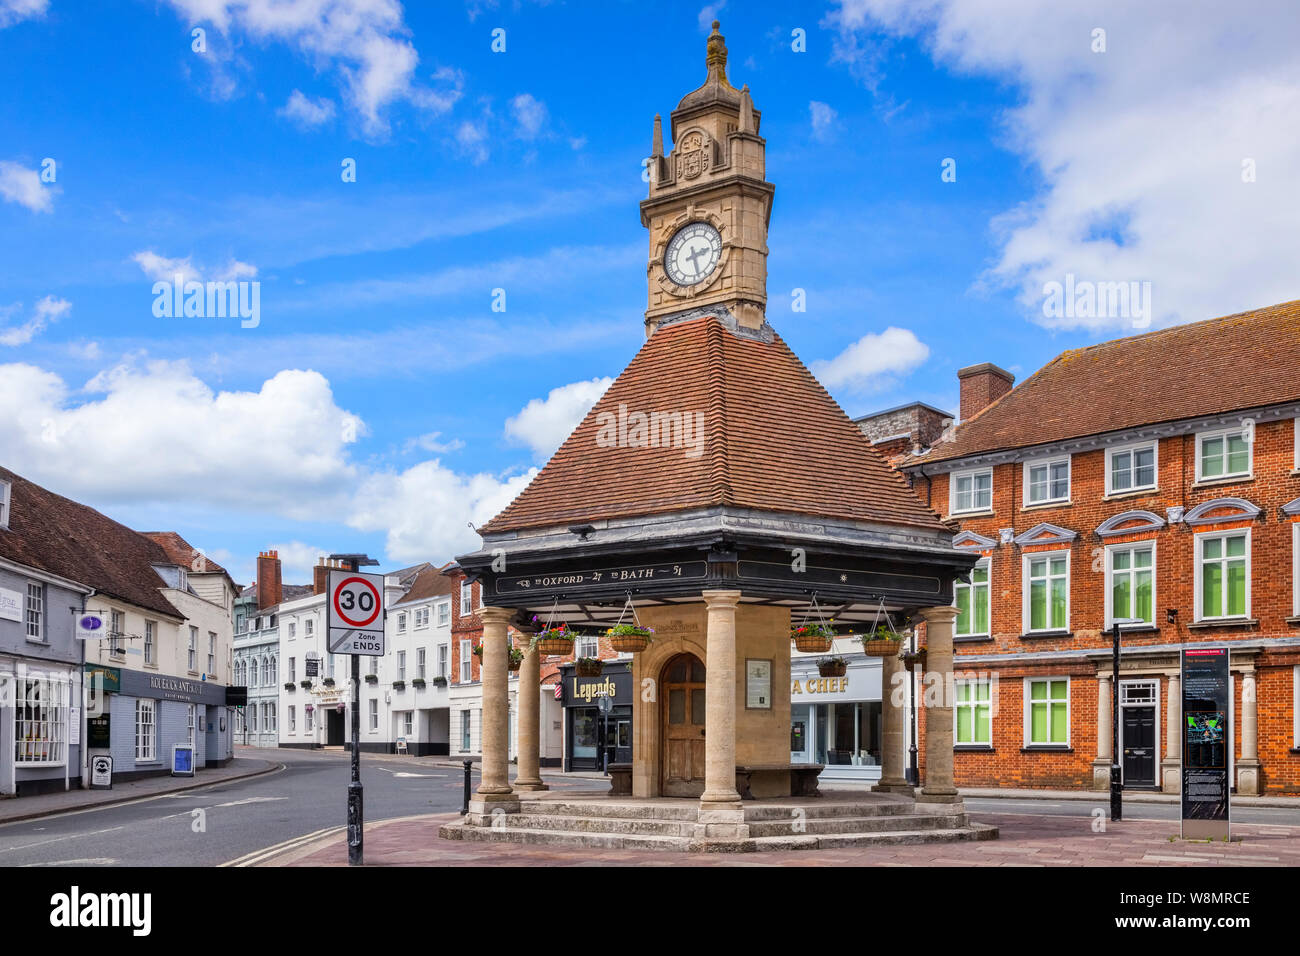 8 Giugno 2019: Newbury, Berkshire, Regno Unito - La Casa di clock, un ventesimo secolo la torre dell orologio a Newbury, Berkshire. Foto Stock